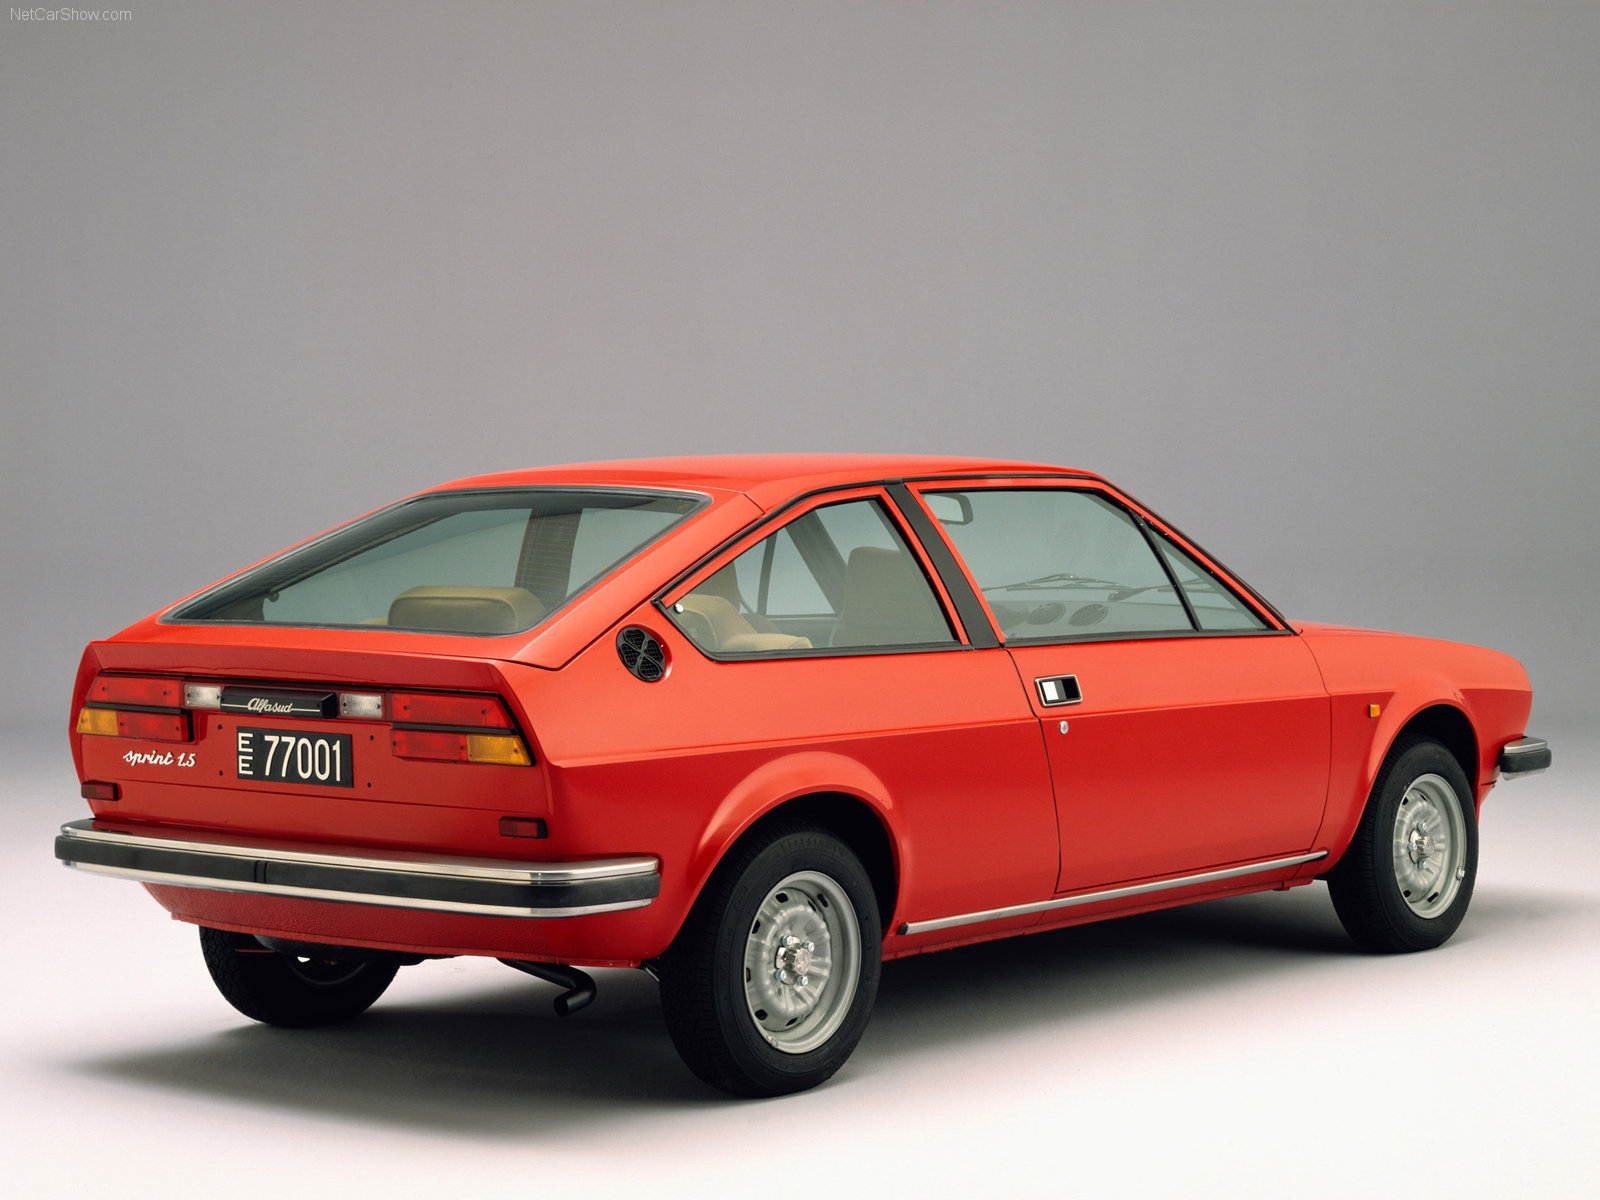 Imagenes de coches antiguos Alfa Romeo del año 1966 al 1990 | Fondos ...